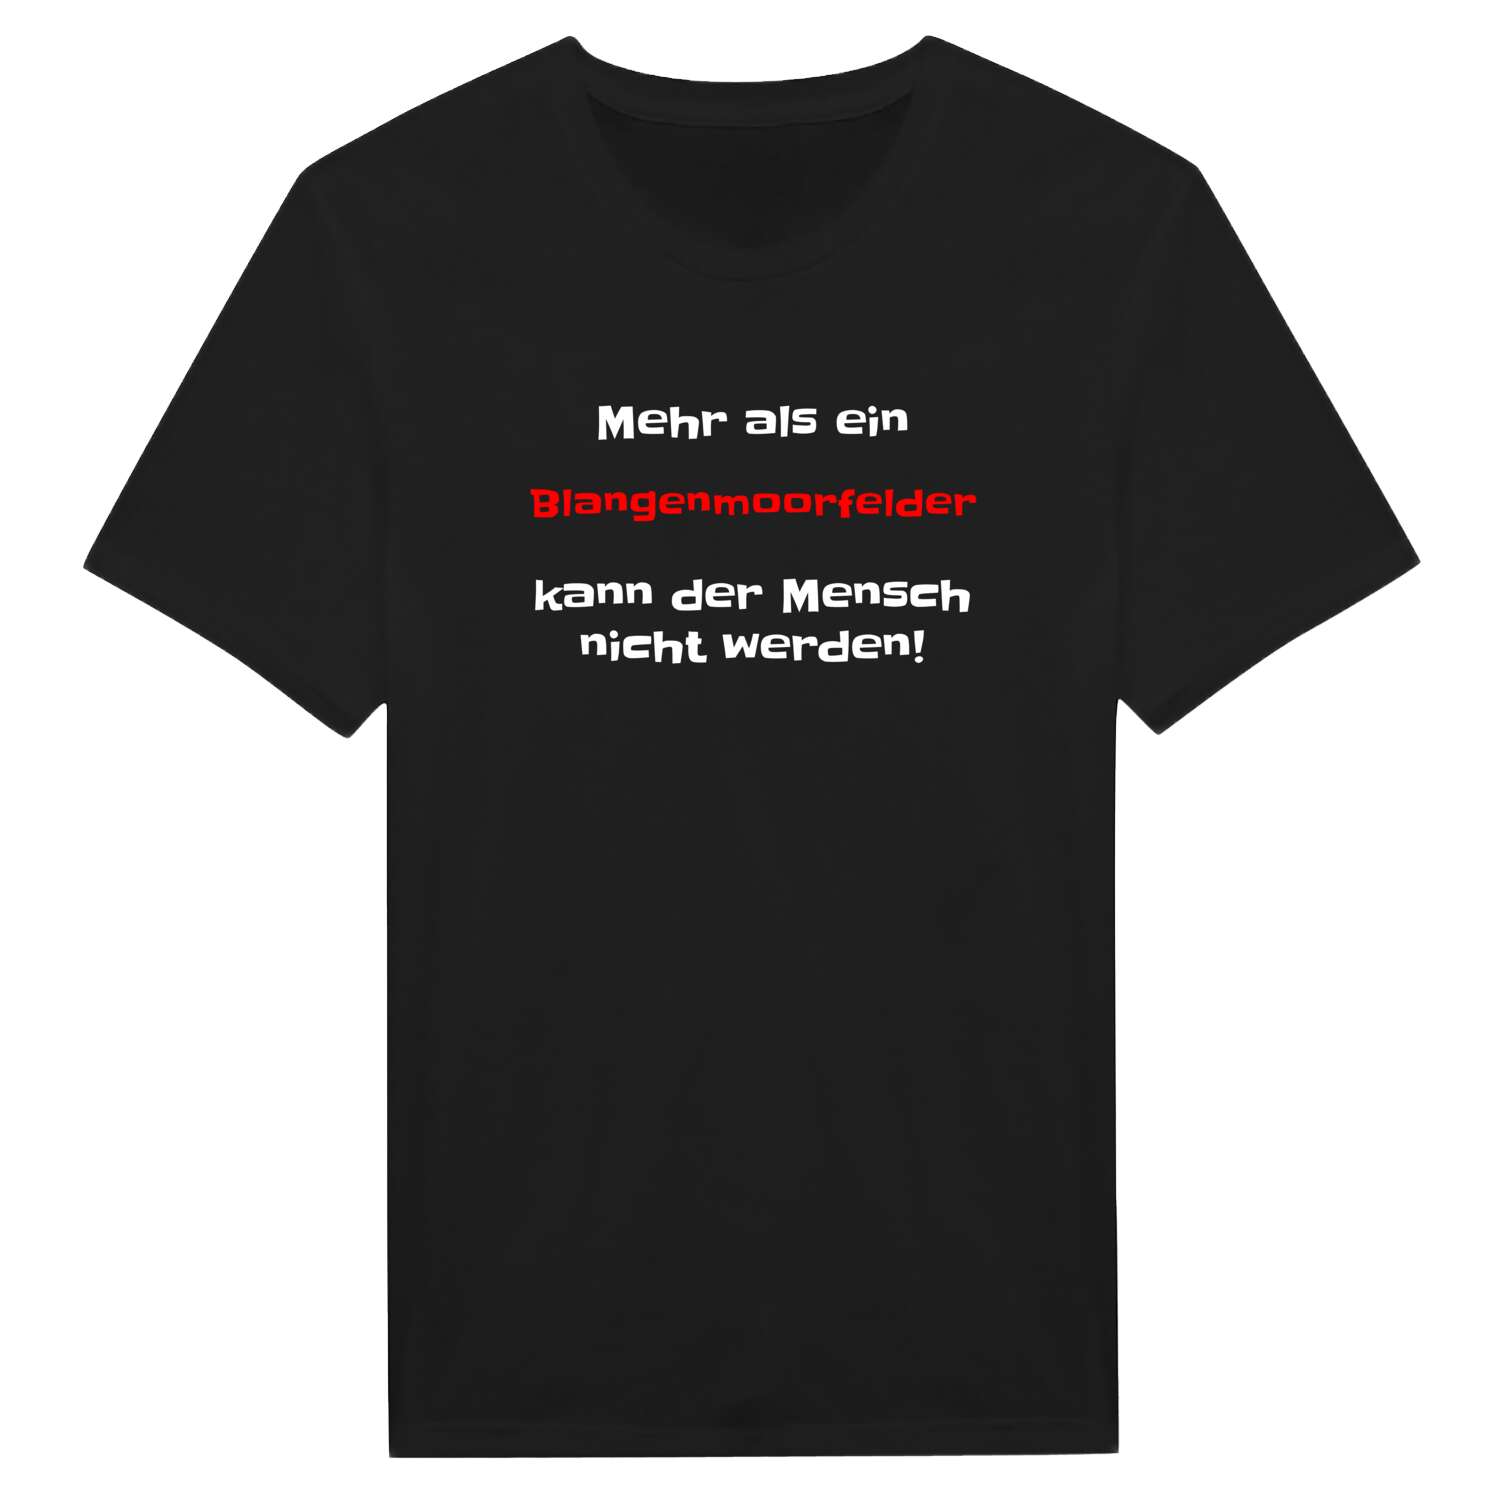 Blangenmoorfeld T-Shirt »Mehr als ein«